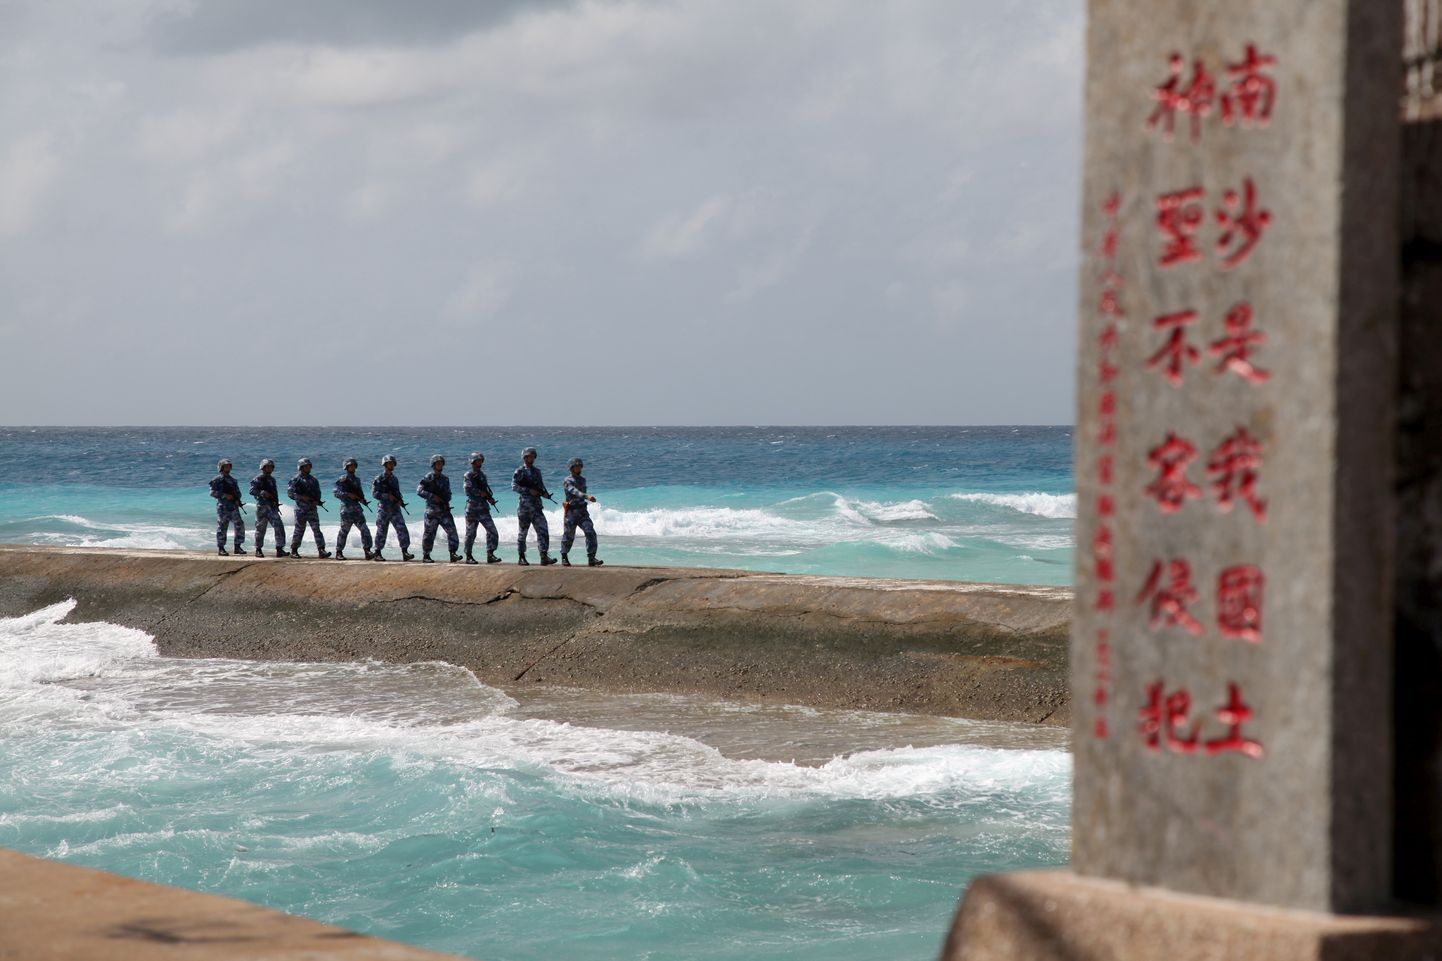 Hiina sõdurid Spratly saartel.